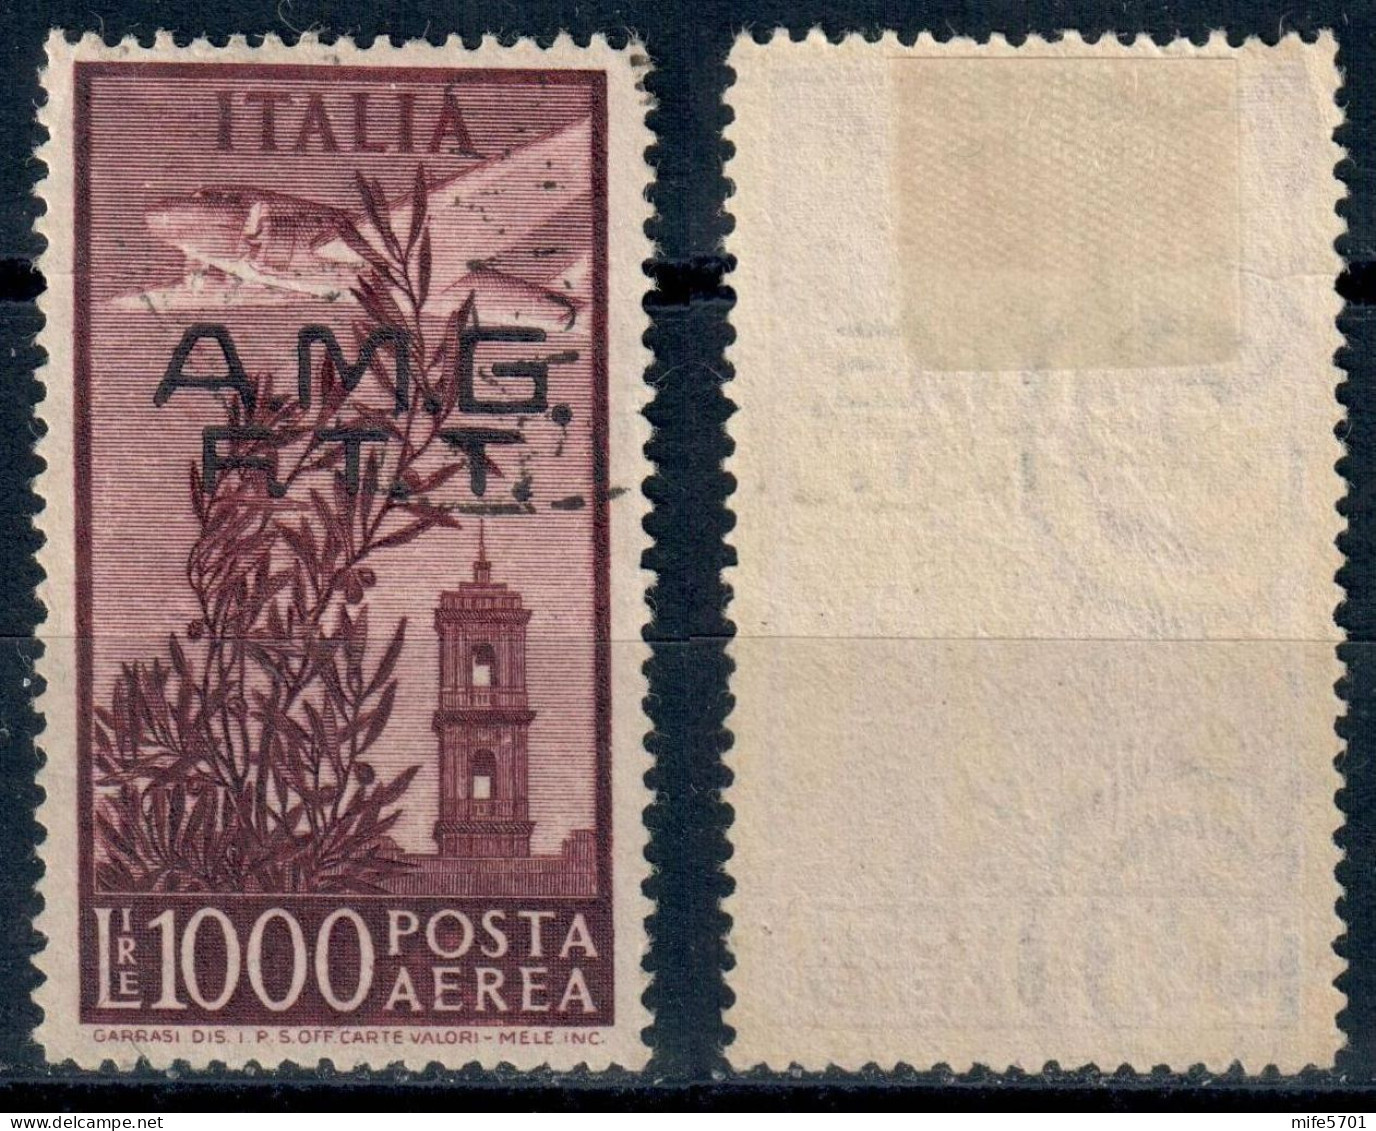 TRIESTE / AMG FTT 1948 - POSTA AEREA TIPO CAMPIDOGLIO L. 1000 - USATO ʘ BUONA CENTRATURA - CATALOGO SASSONE PA16 - Poste Aérienne